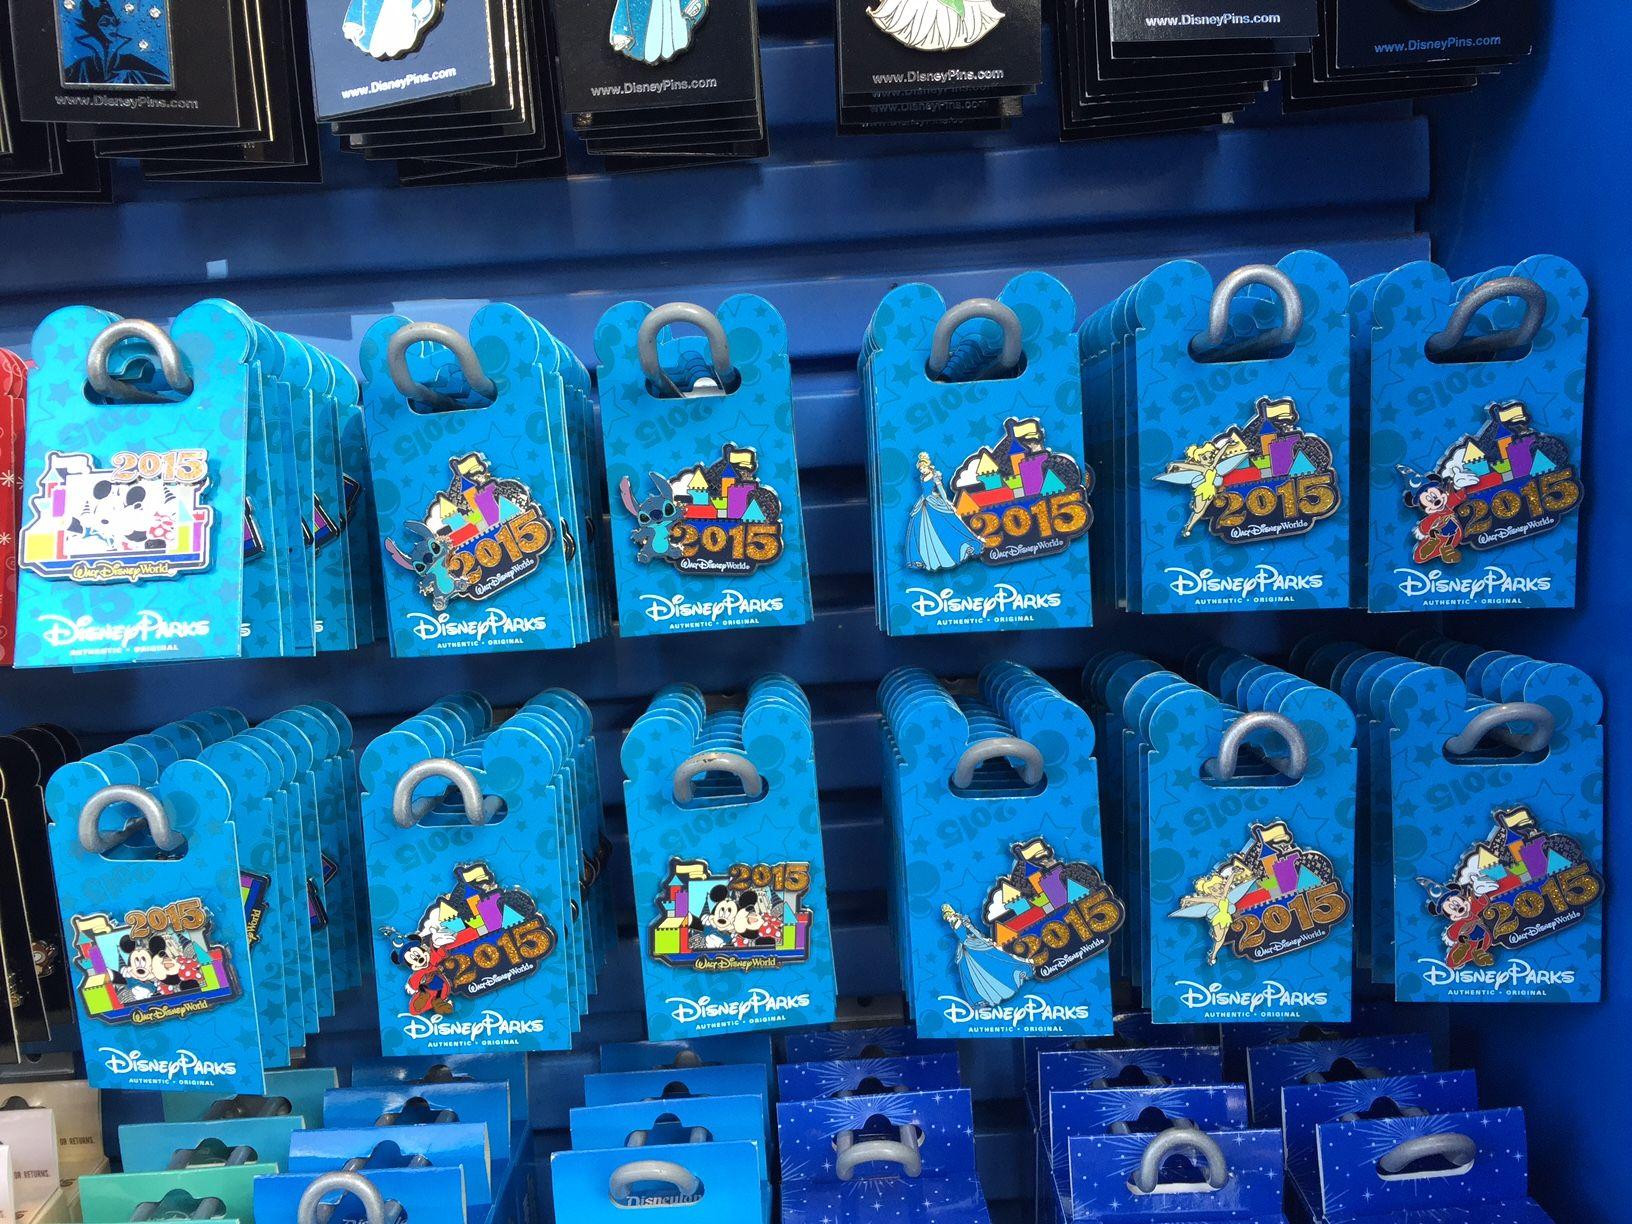 Original Walt Disney World Logo - 2015 Merchandise Round Up - Disney Pins Blog